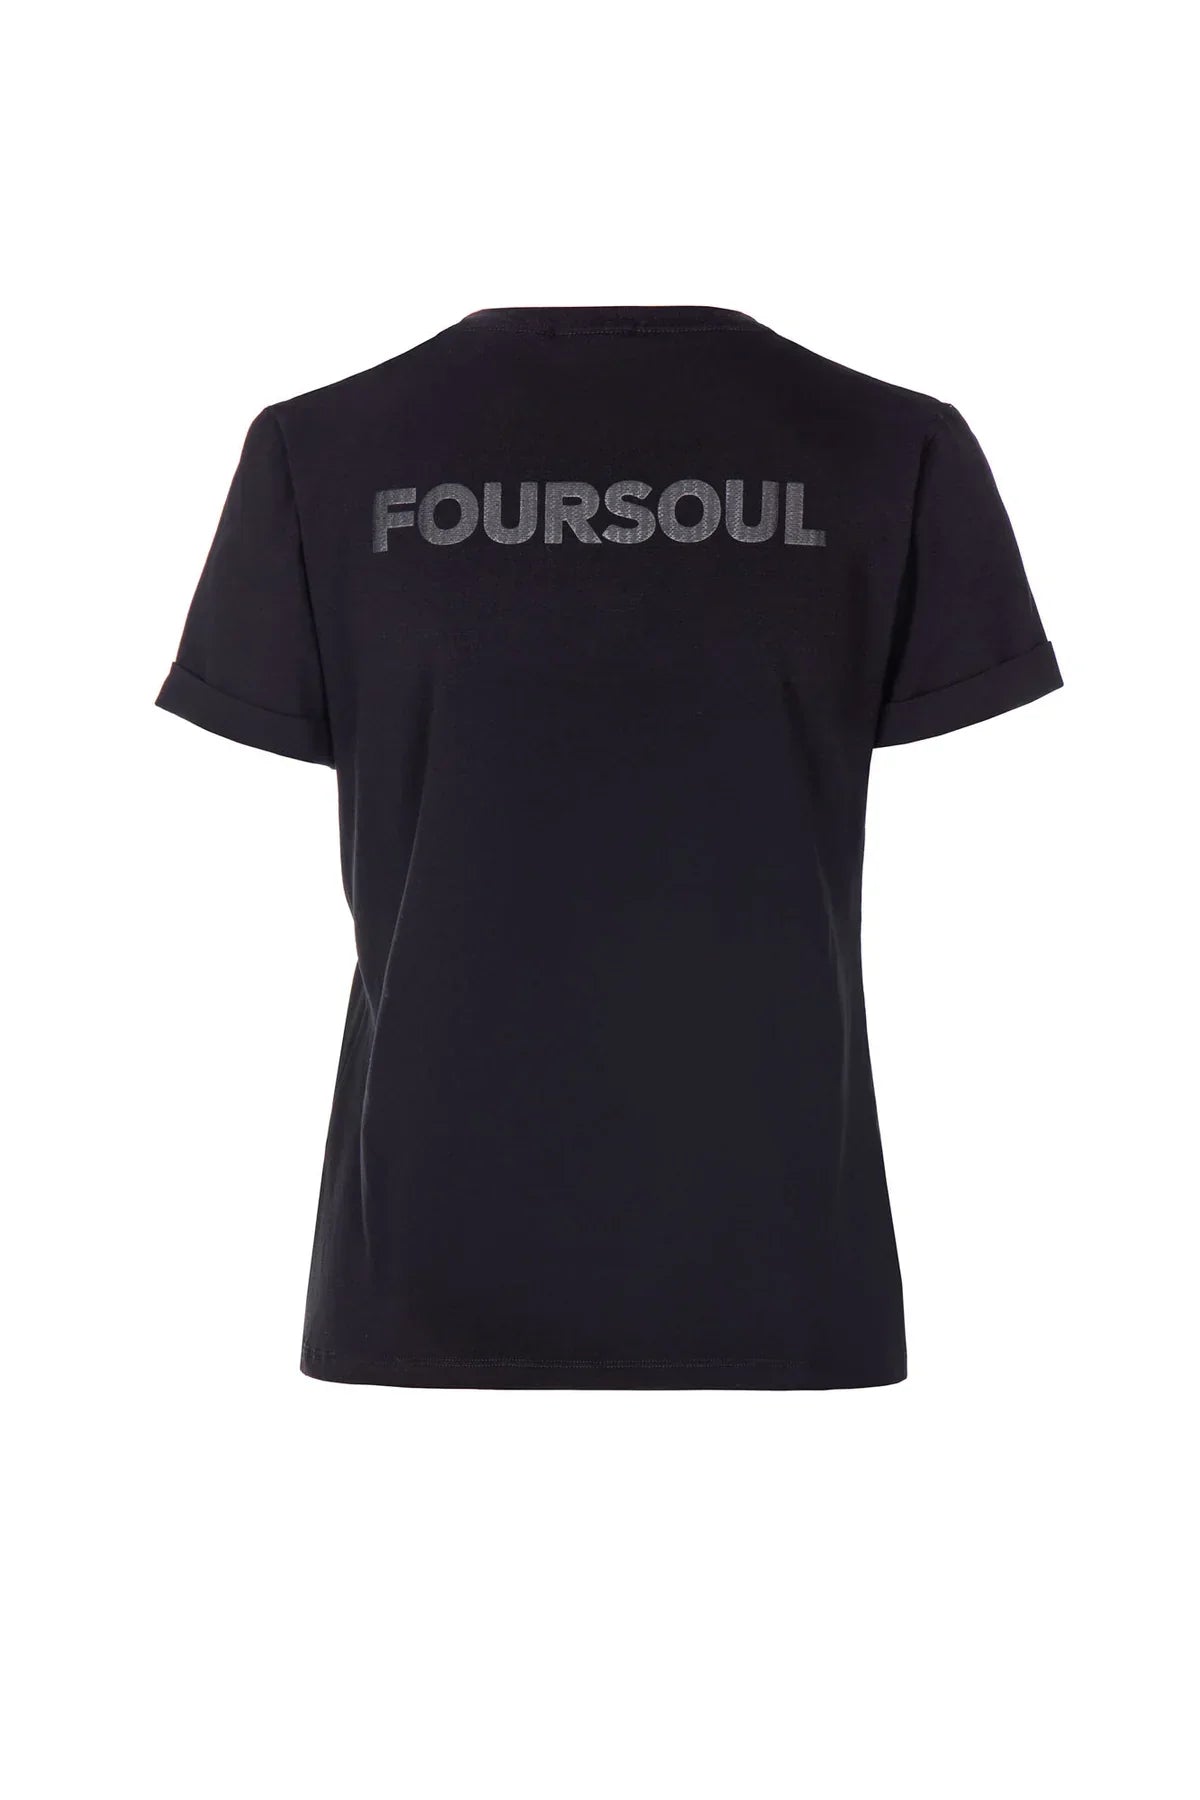 Tshirt FOURSOUL - Preto / M - TSHIRTS FOURSOUL